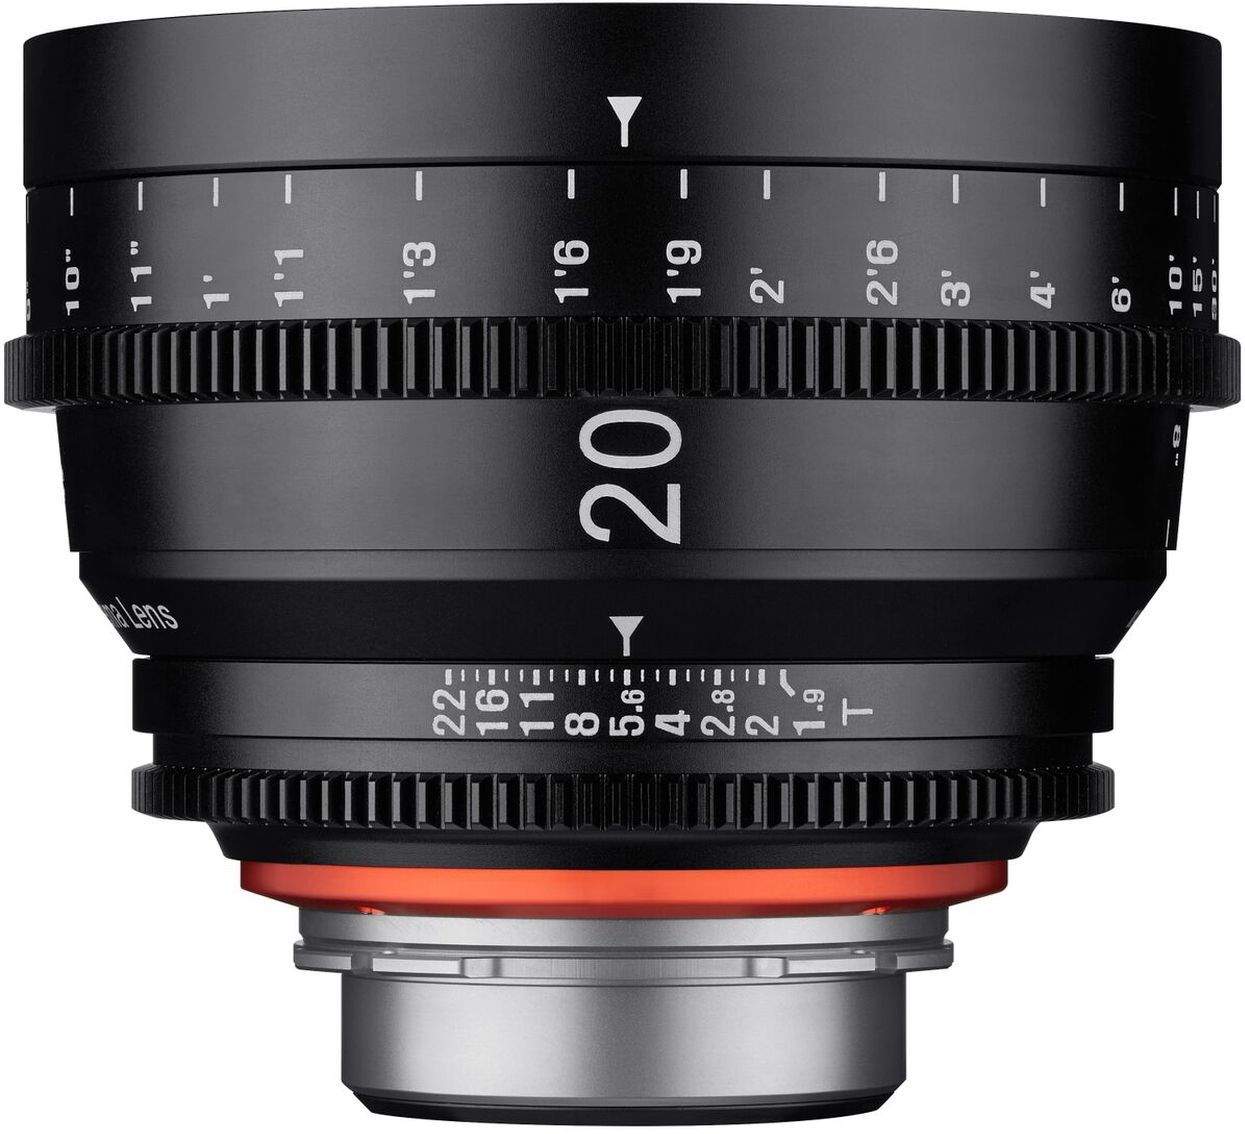 20mm T1.9 XEEN Sony FE Full Frame Cinema Lens